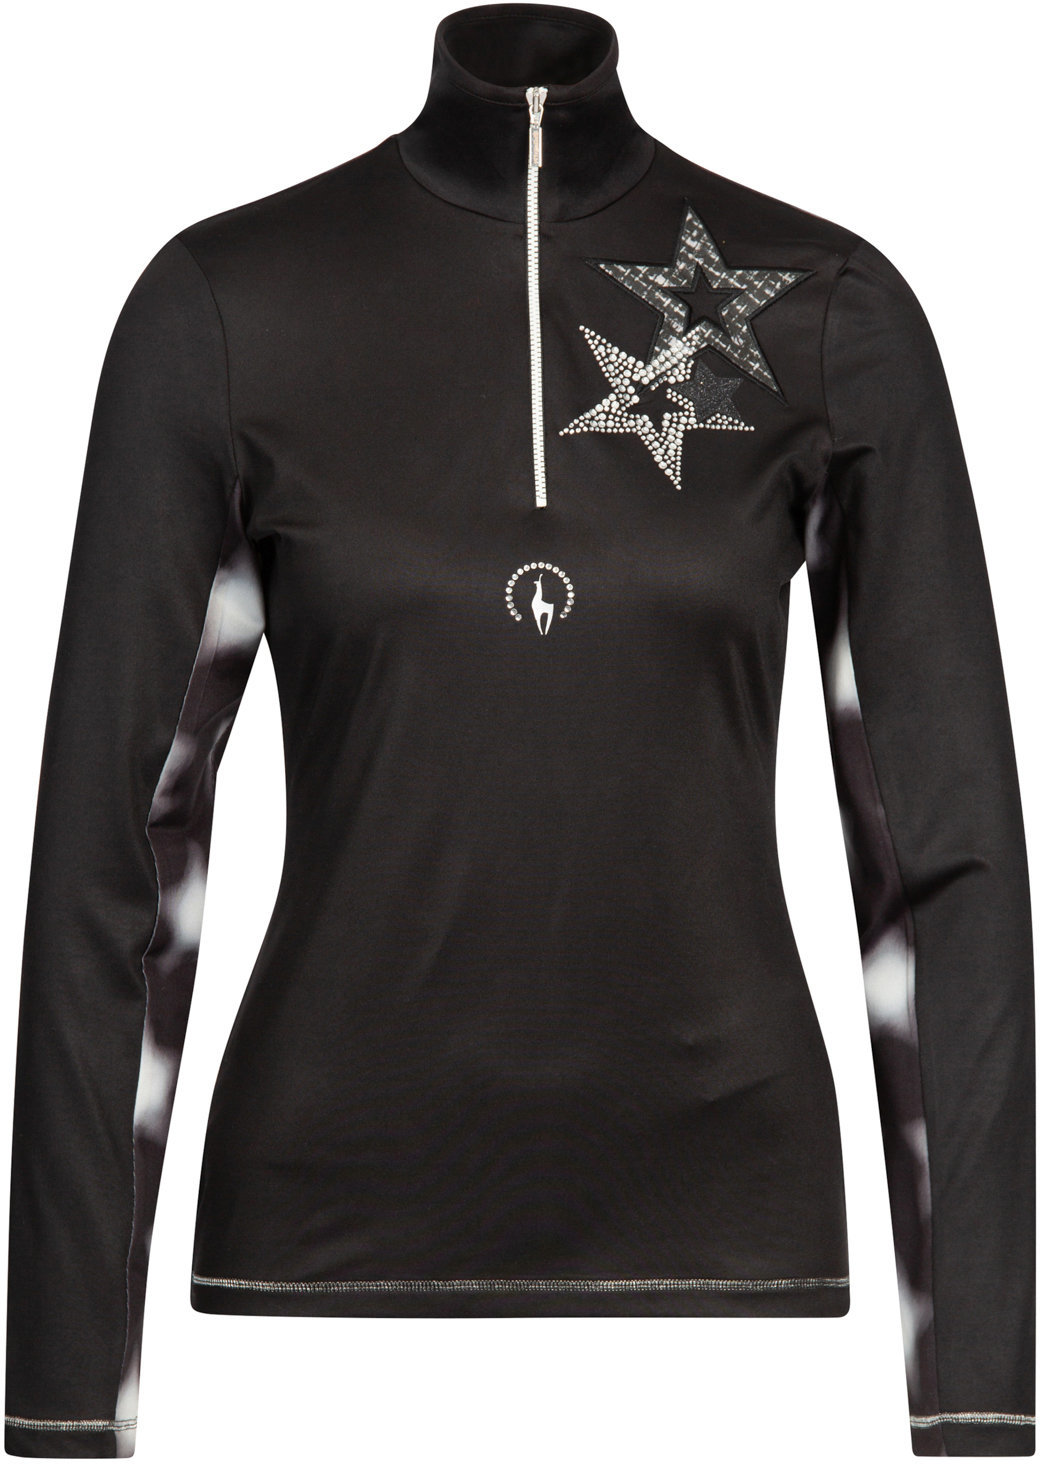 Φούτερ και Μπλούζα Σκι Sportalm Julie Womens Sweater Black 34